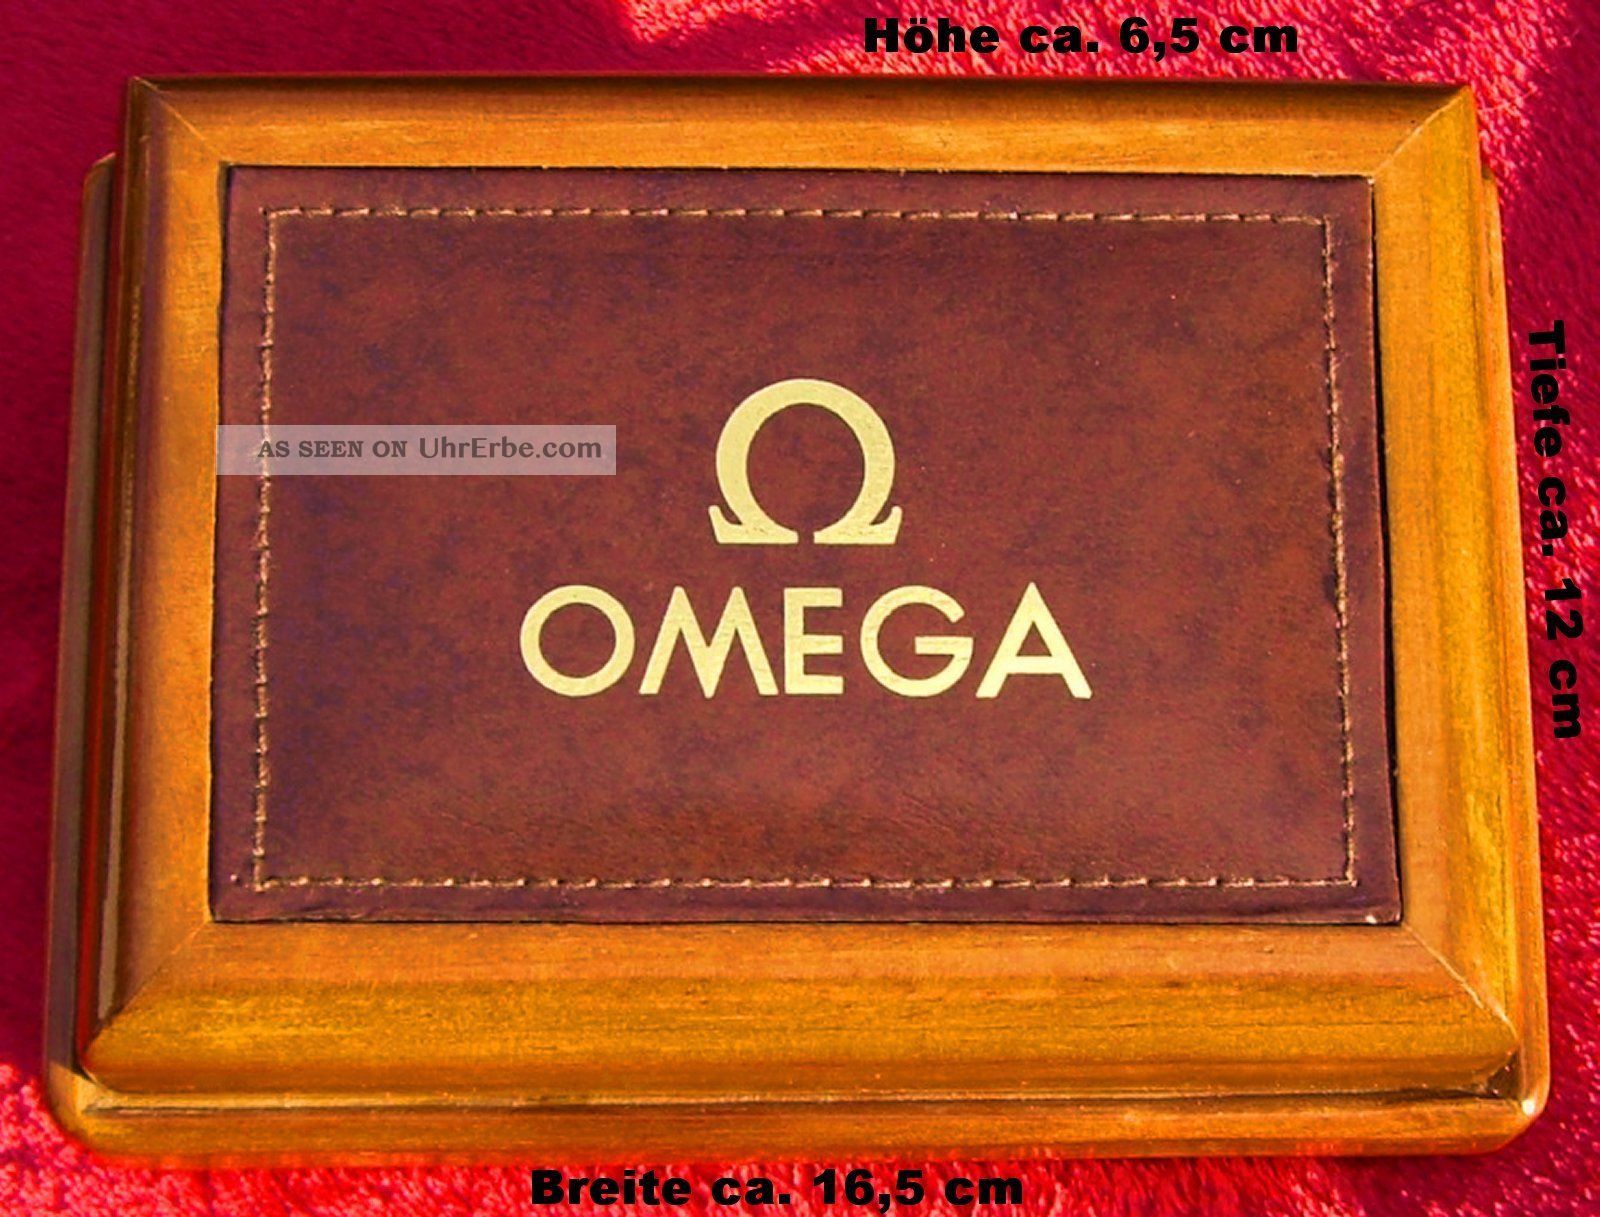 Omega Seamaster,  Andere / Uhrenbox - Holz / Wood - Uhren / Watch Box Armbanduhren Bild